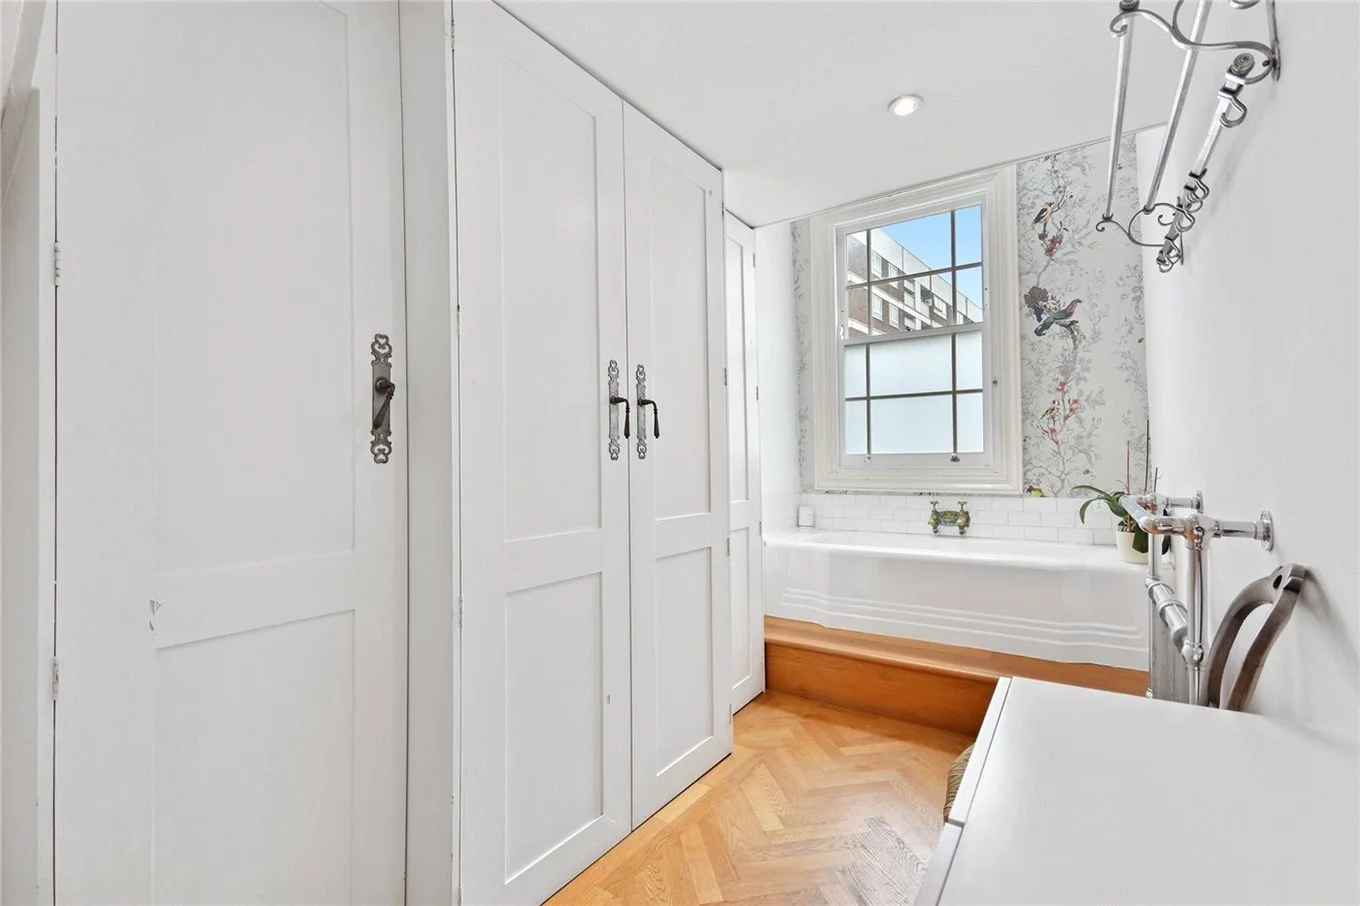 Для минималистов: в Лондоне продают самый узкий дом шириной 1,8 метра - фото 491908